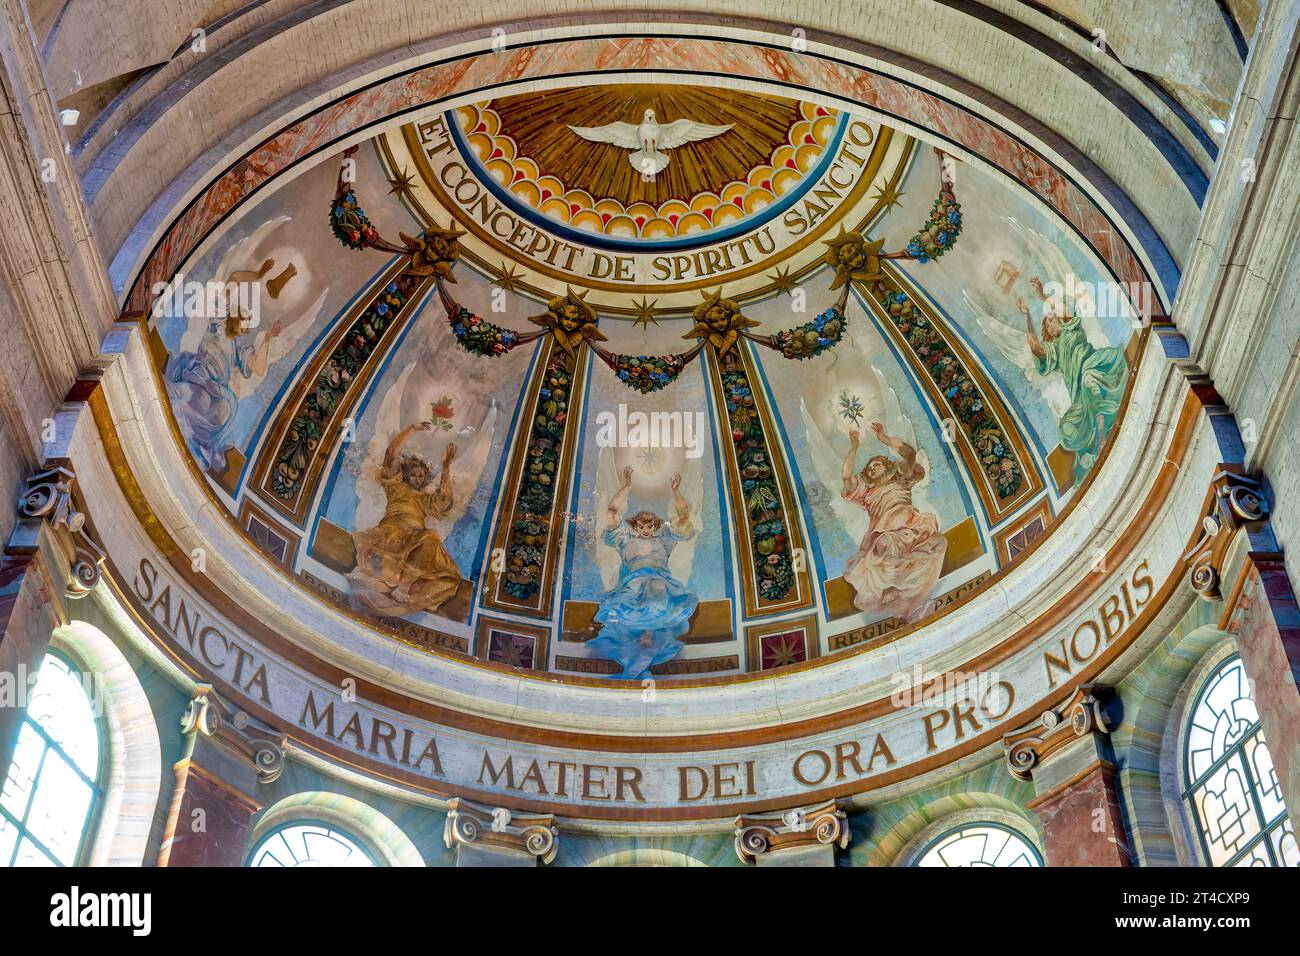 Das Innere der Kirche Gran Madre di Dio, Rom, Italien Stockfoto